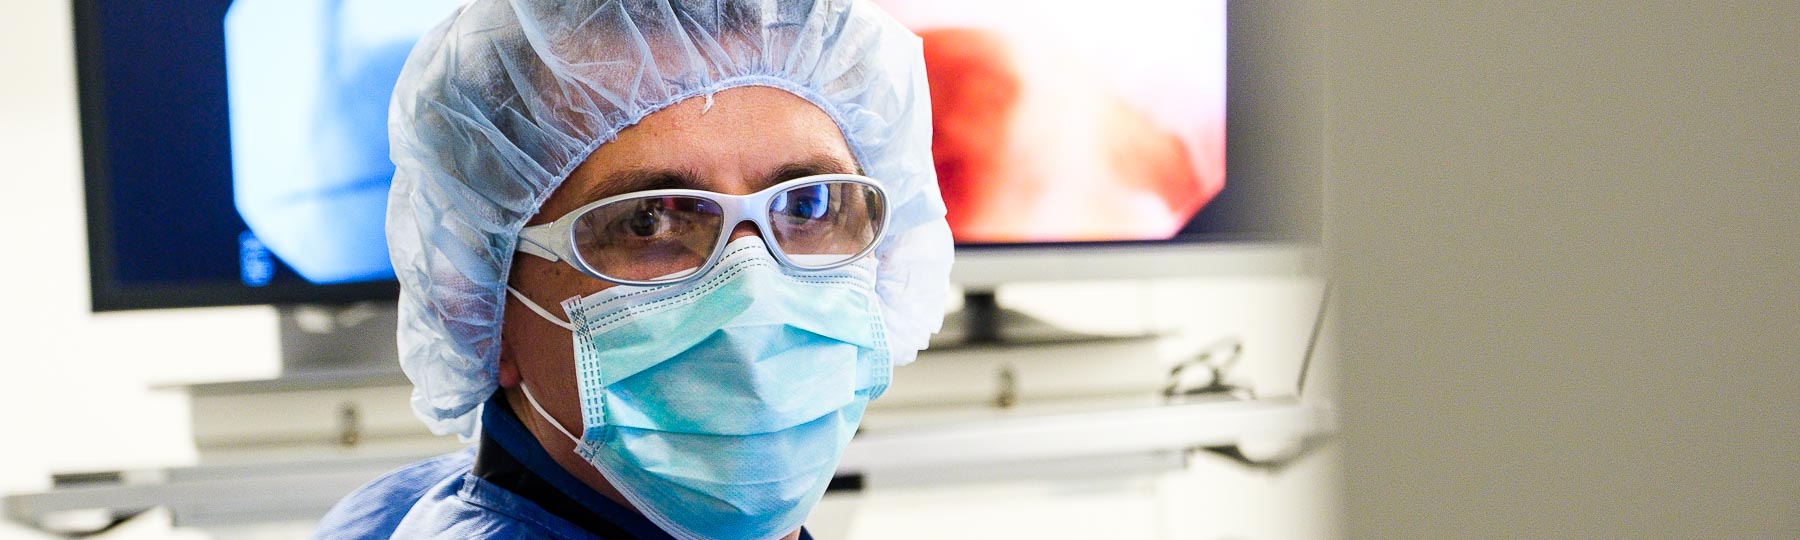 Arzt  während einer OP im Evangelischen Krankenhaus Düsseldorf